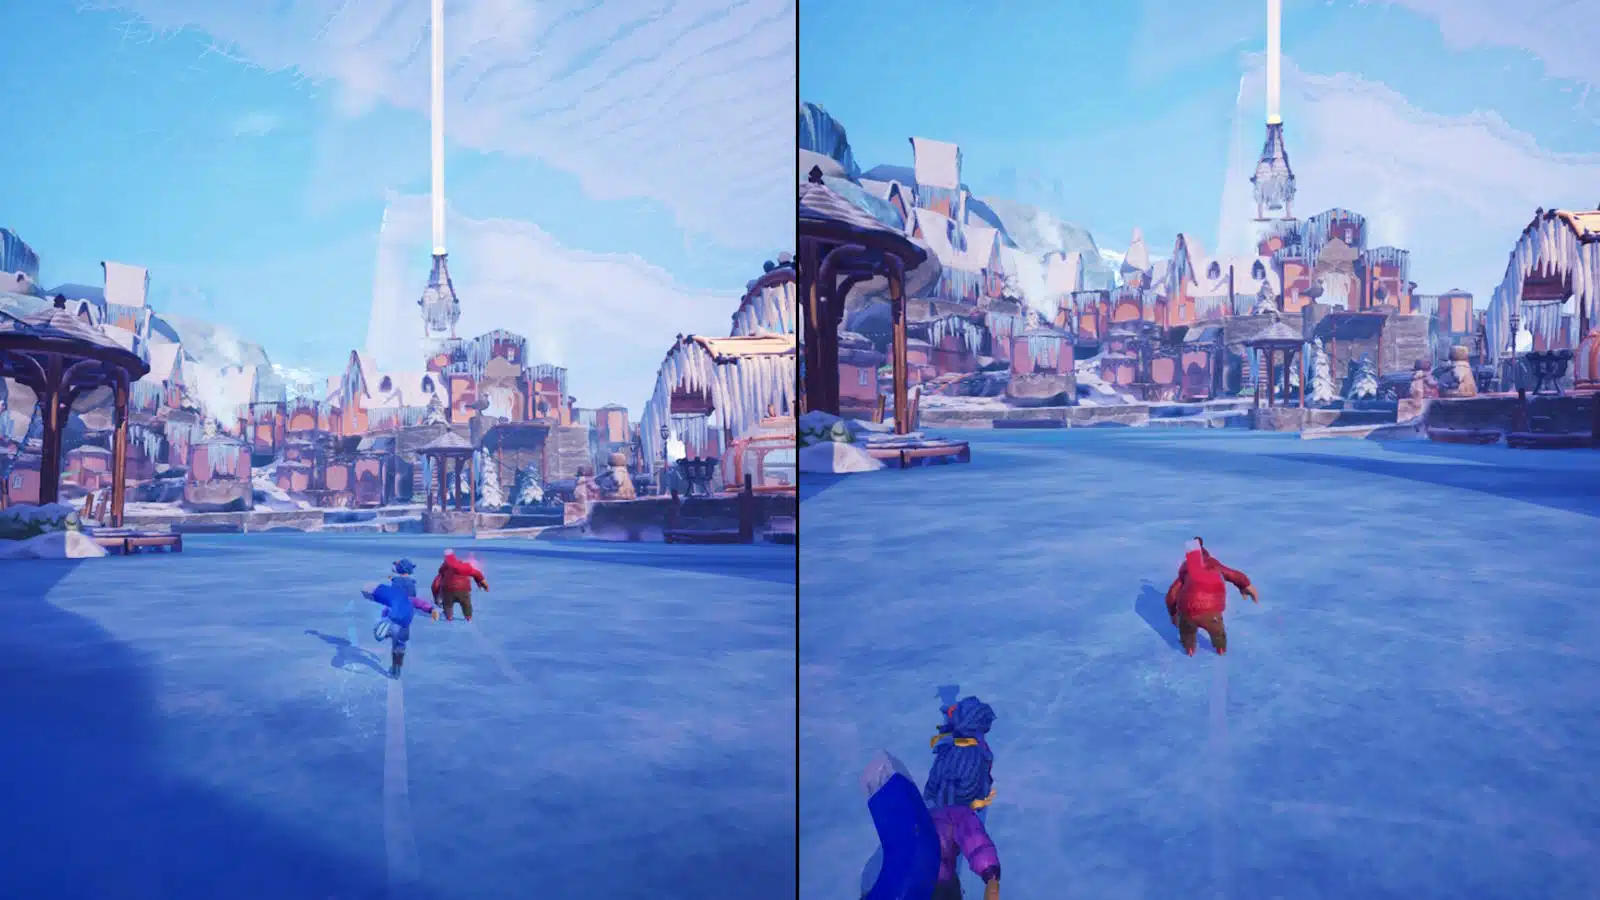 شخصيات متحركة تتزلج على سطح جليدي في بيئة خيالية.